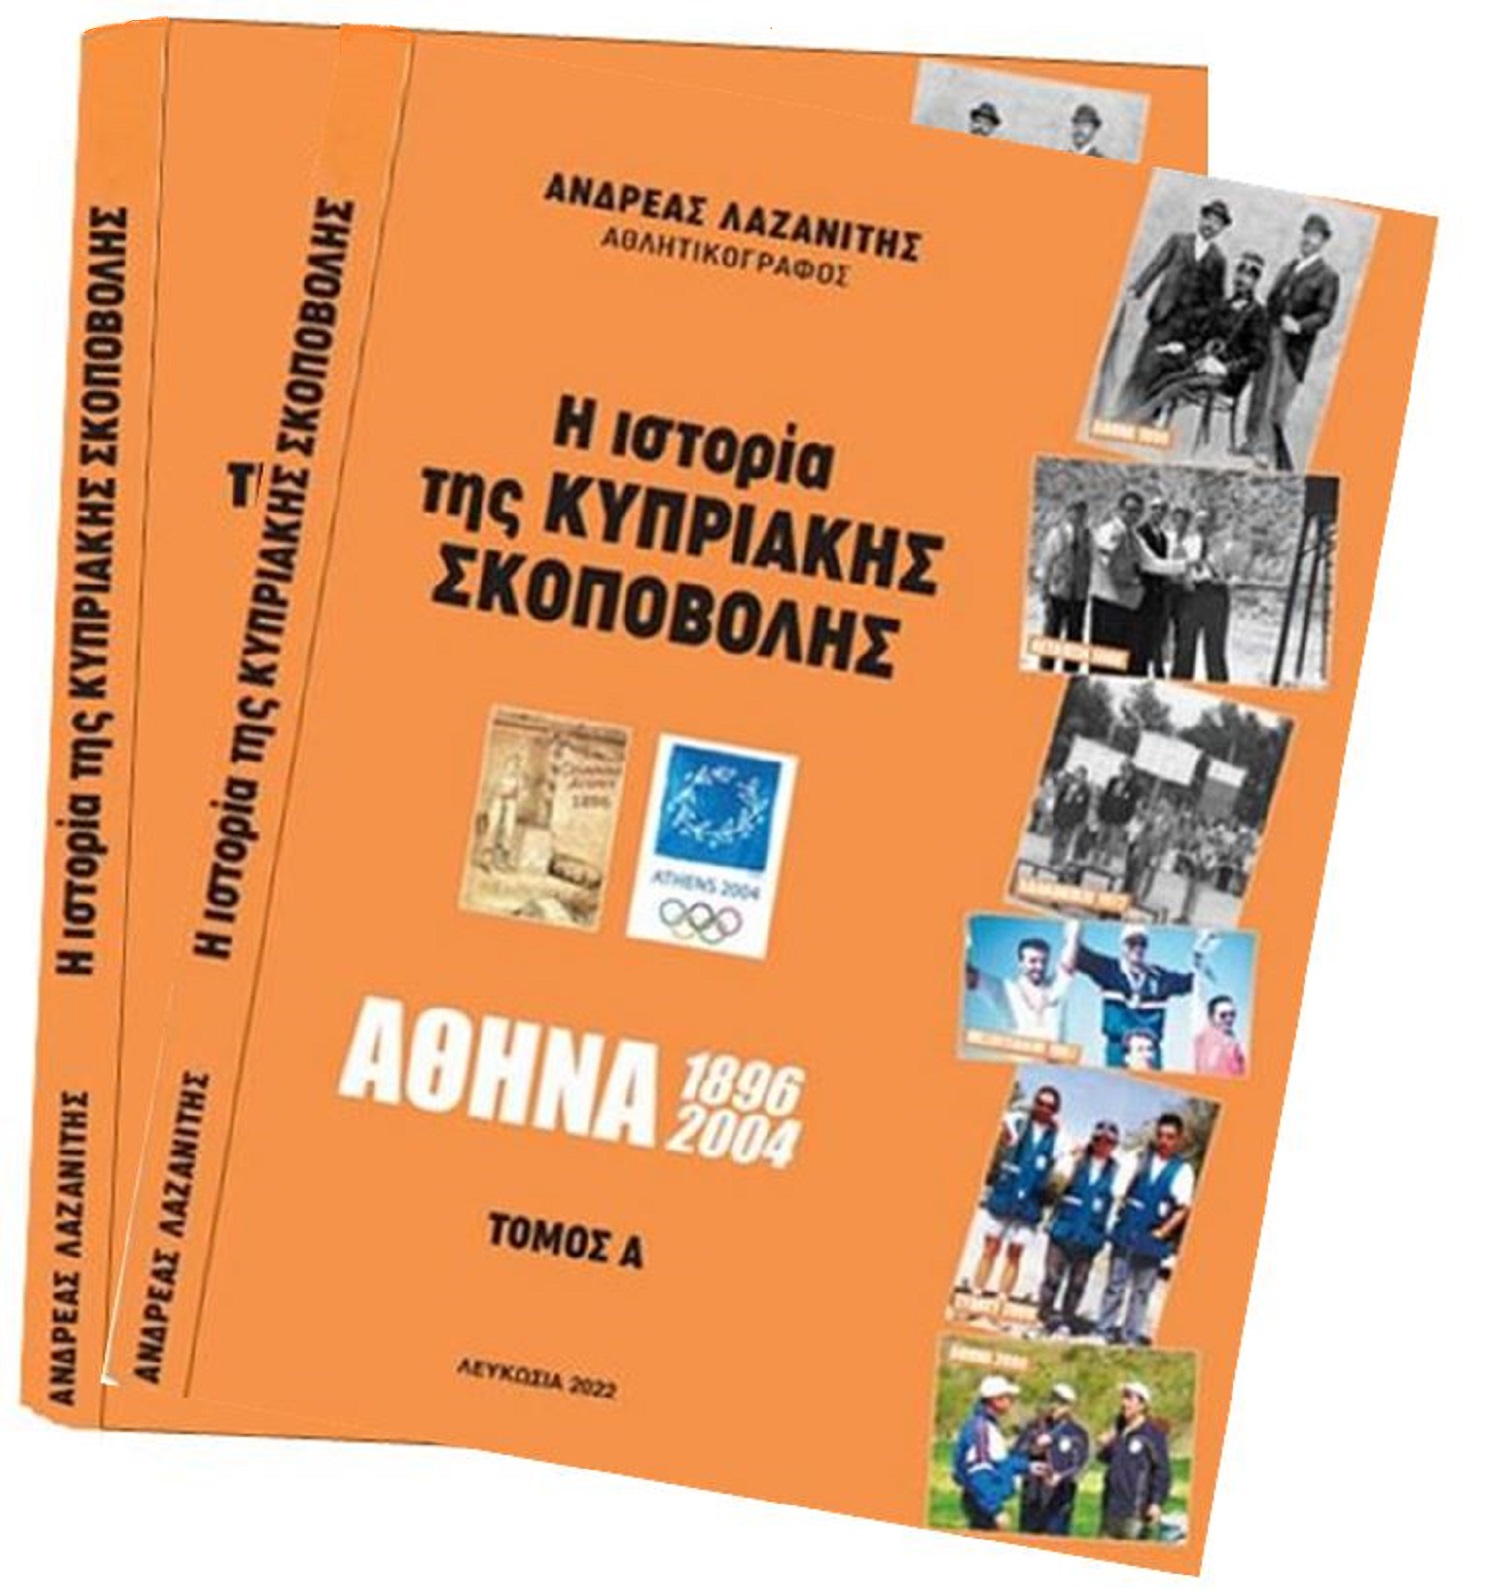 Παρουσίαση βιβλίου του Ανδρέα Λαζανίτη «Ιστορία της Κυπριακής Σκοποβολής»